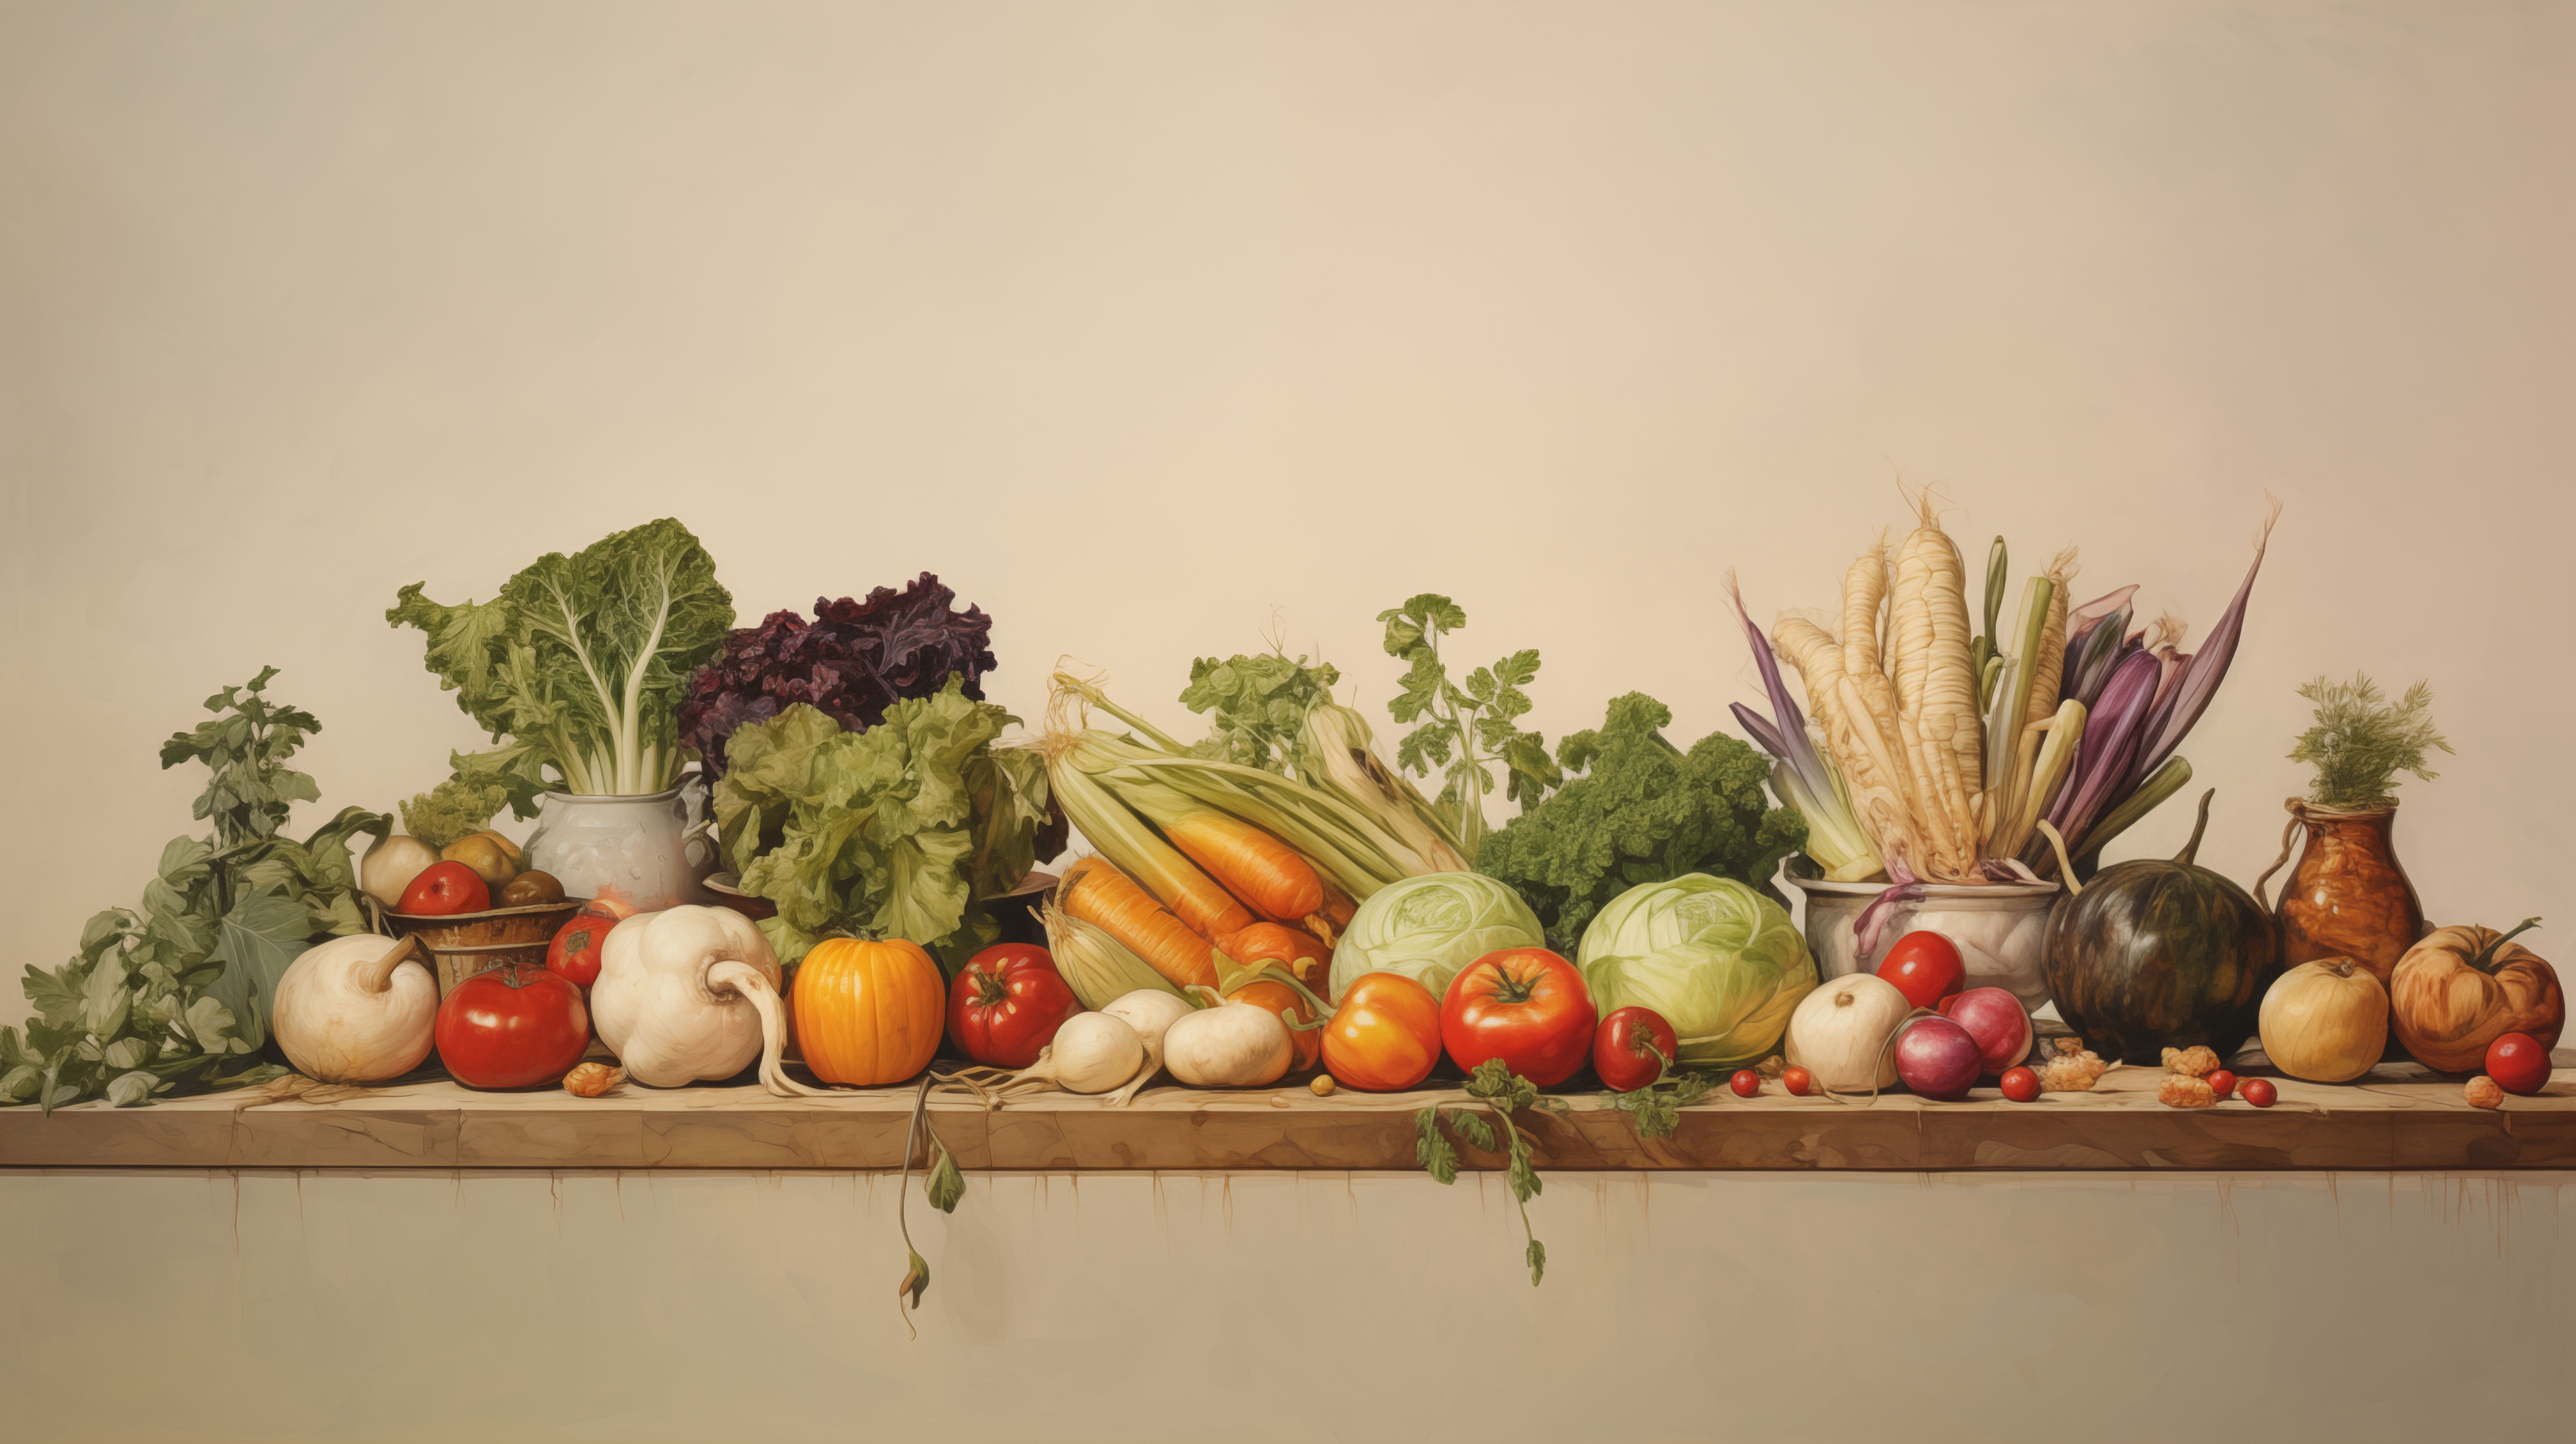 تصویر میان سفر از سبزیجات روی میز